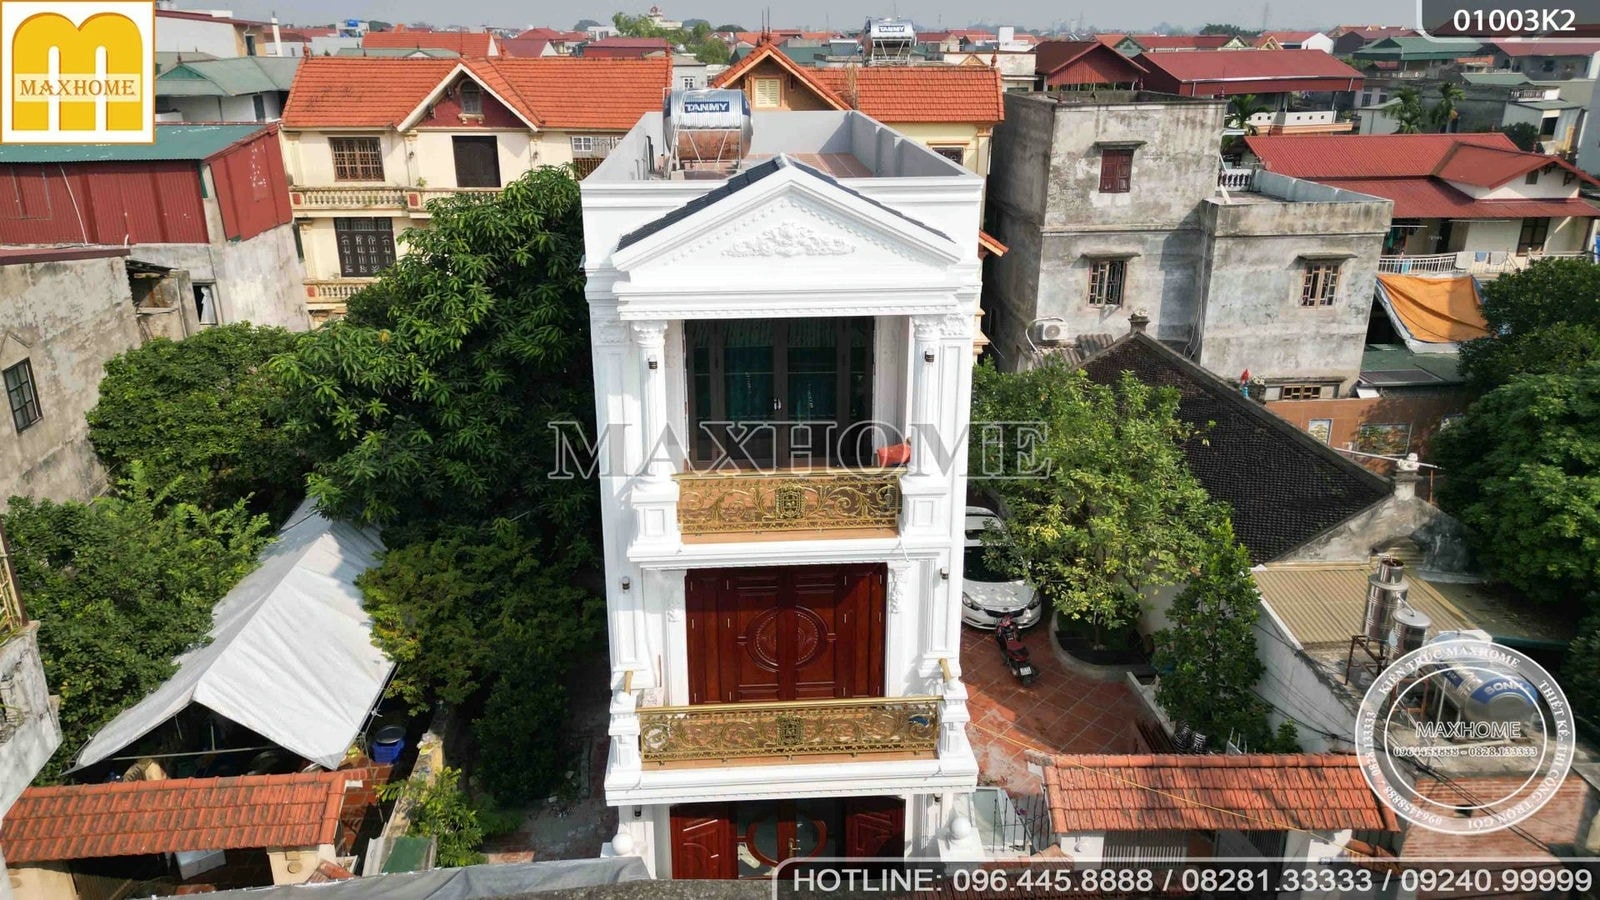 Bàn giao nhà phố 3 tầng SIÊU SANG với thiết kế tân cổ điển tại Hà Nội | MH01954